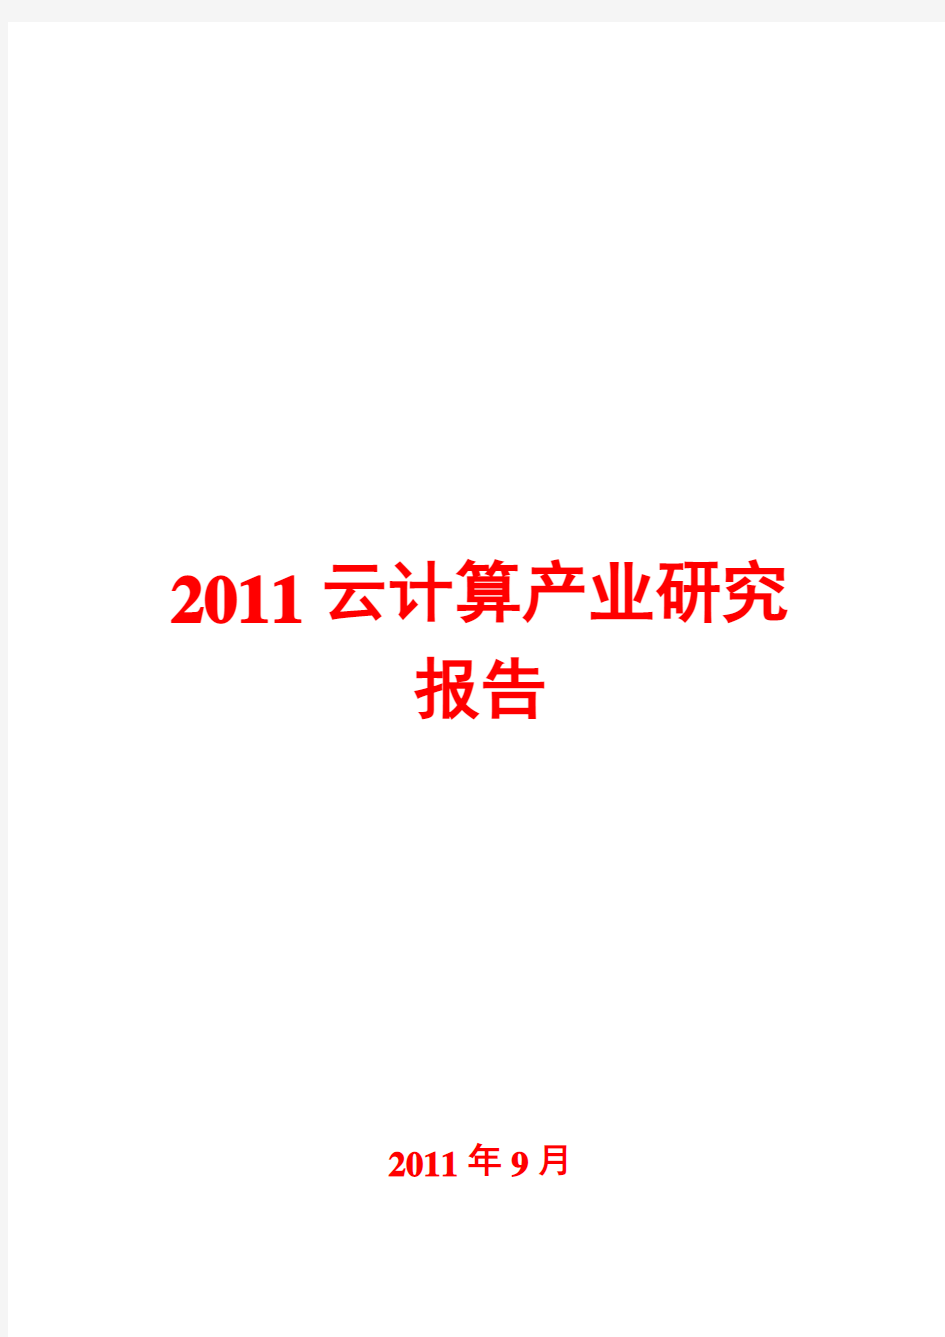 云计算产业研究报告2011